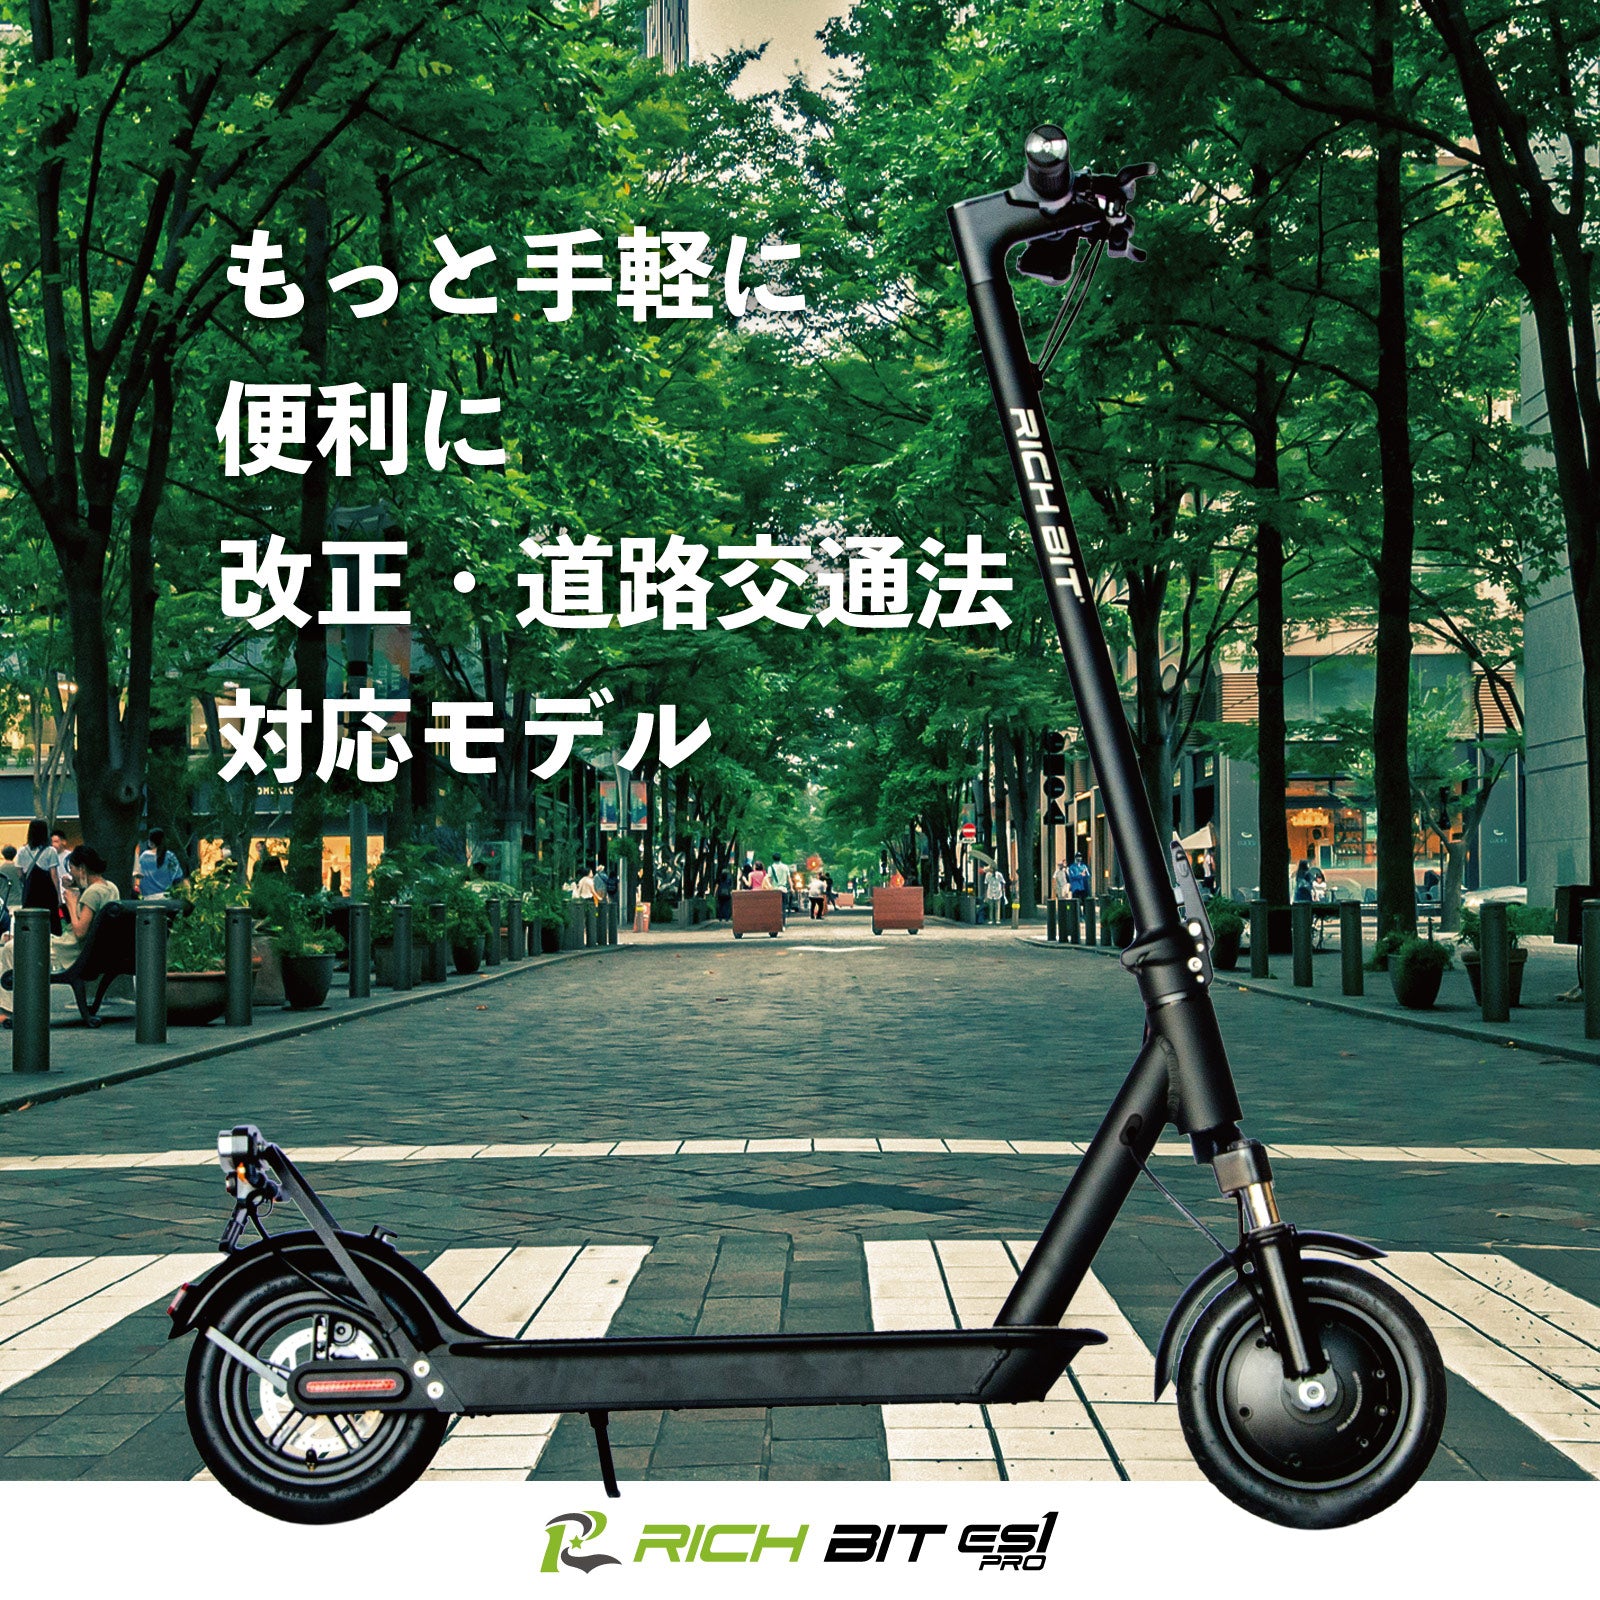 RICHBIT ES1 Pro☆特定小型原動機付自転車モデル【ホワイト】電動 